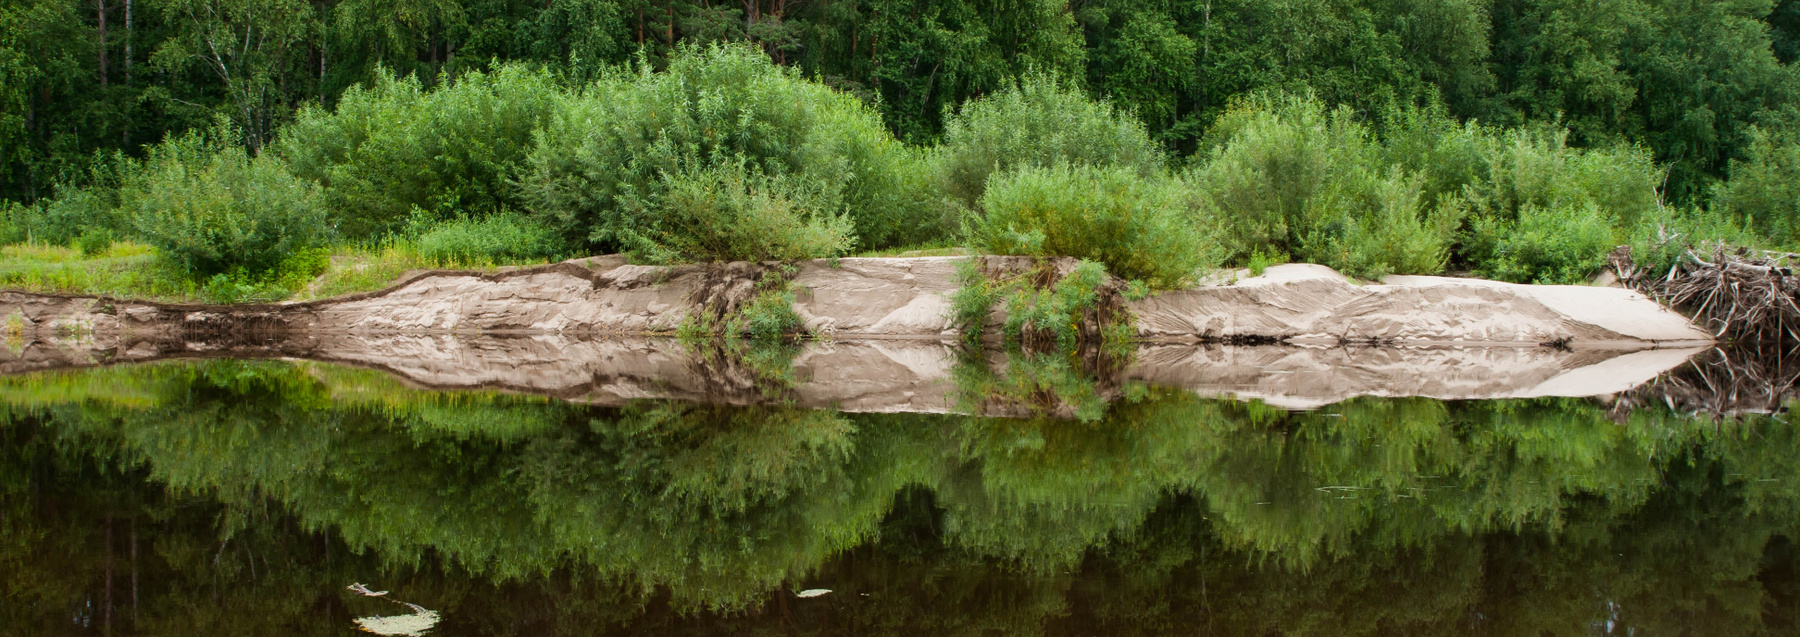 Отражение природы Отражение вода природа пейзаж река деревья лето